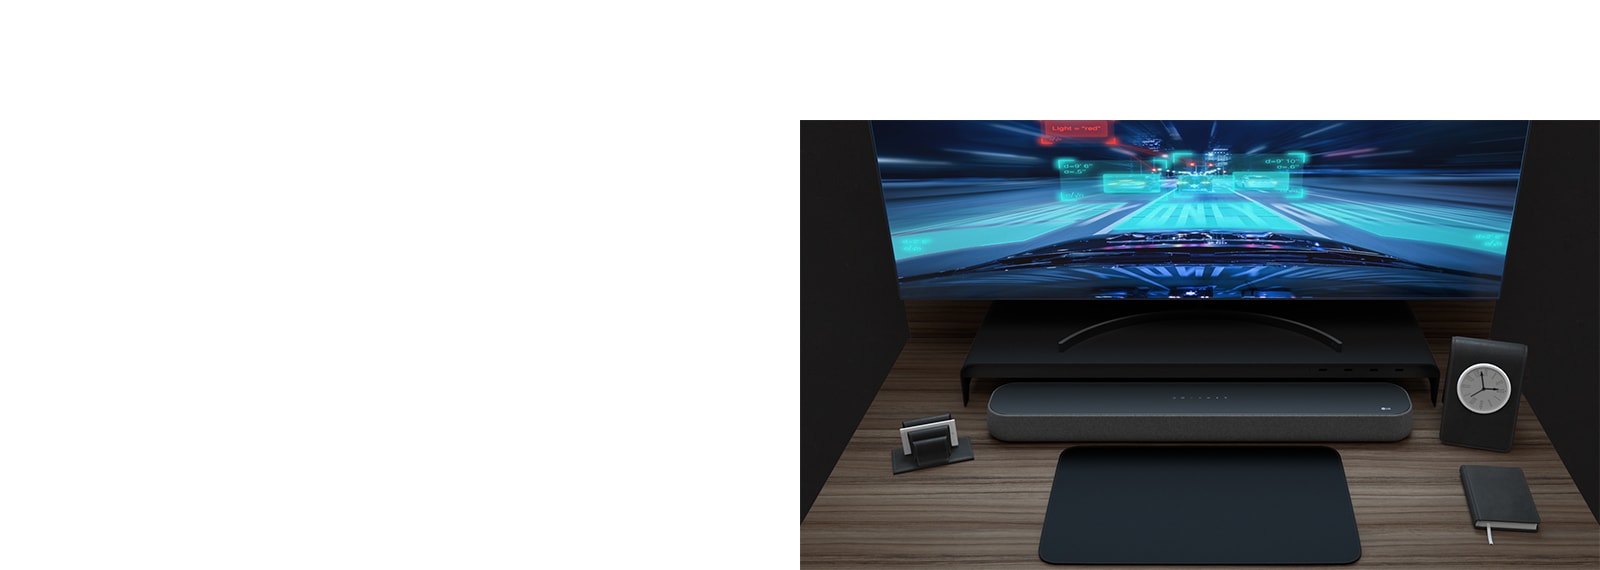 En soundbar, en krökt skärm, en anteckning och en liten klocka ligger på ett träbord. För att beskriva produktens spelvänliga funktioner visas ett racingspel på skärmen.